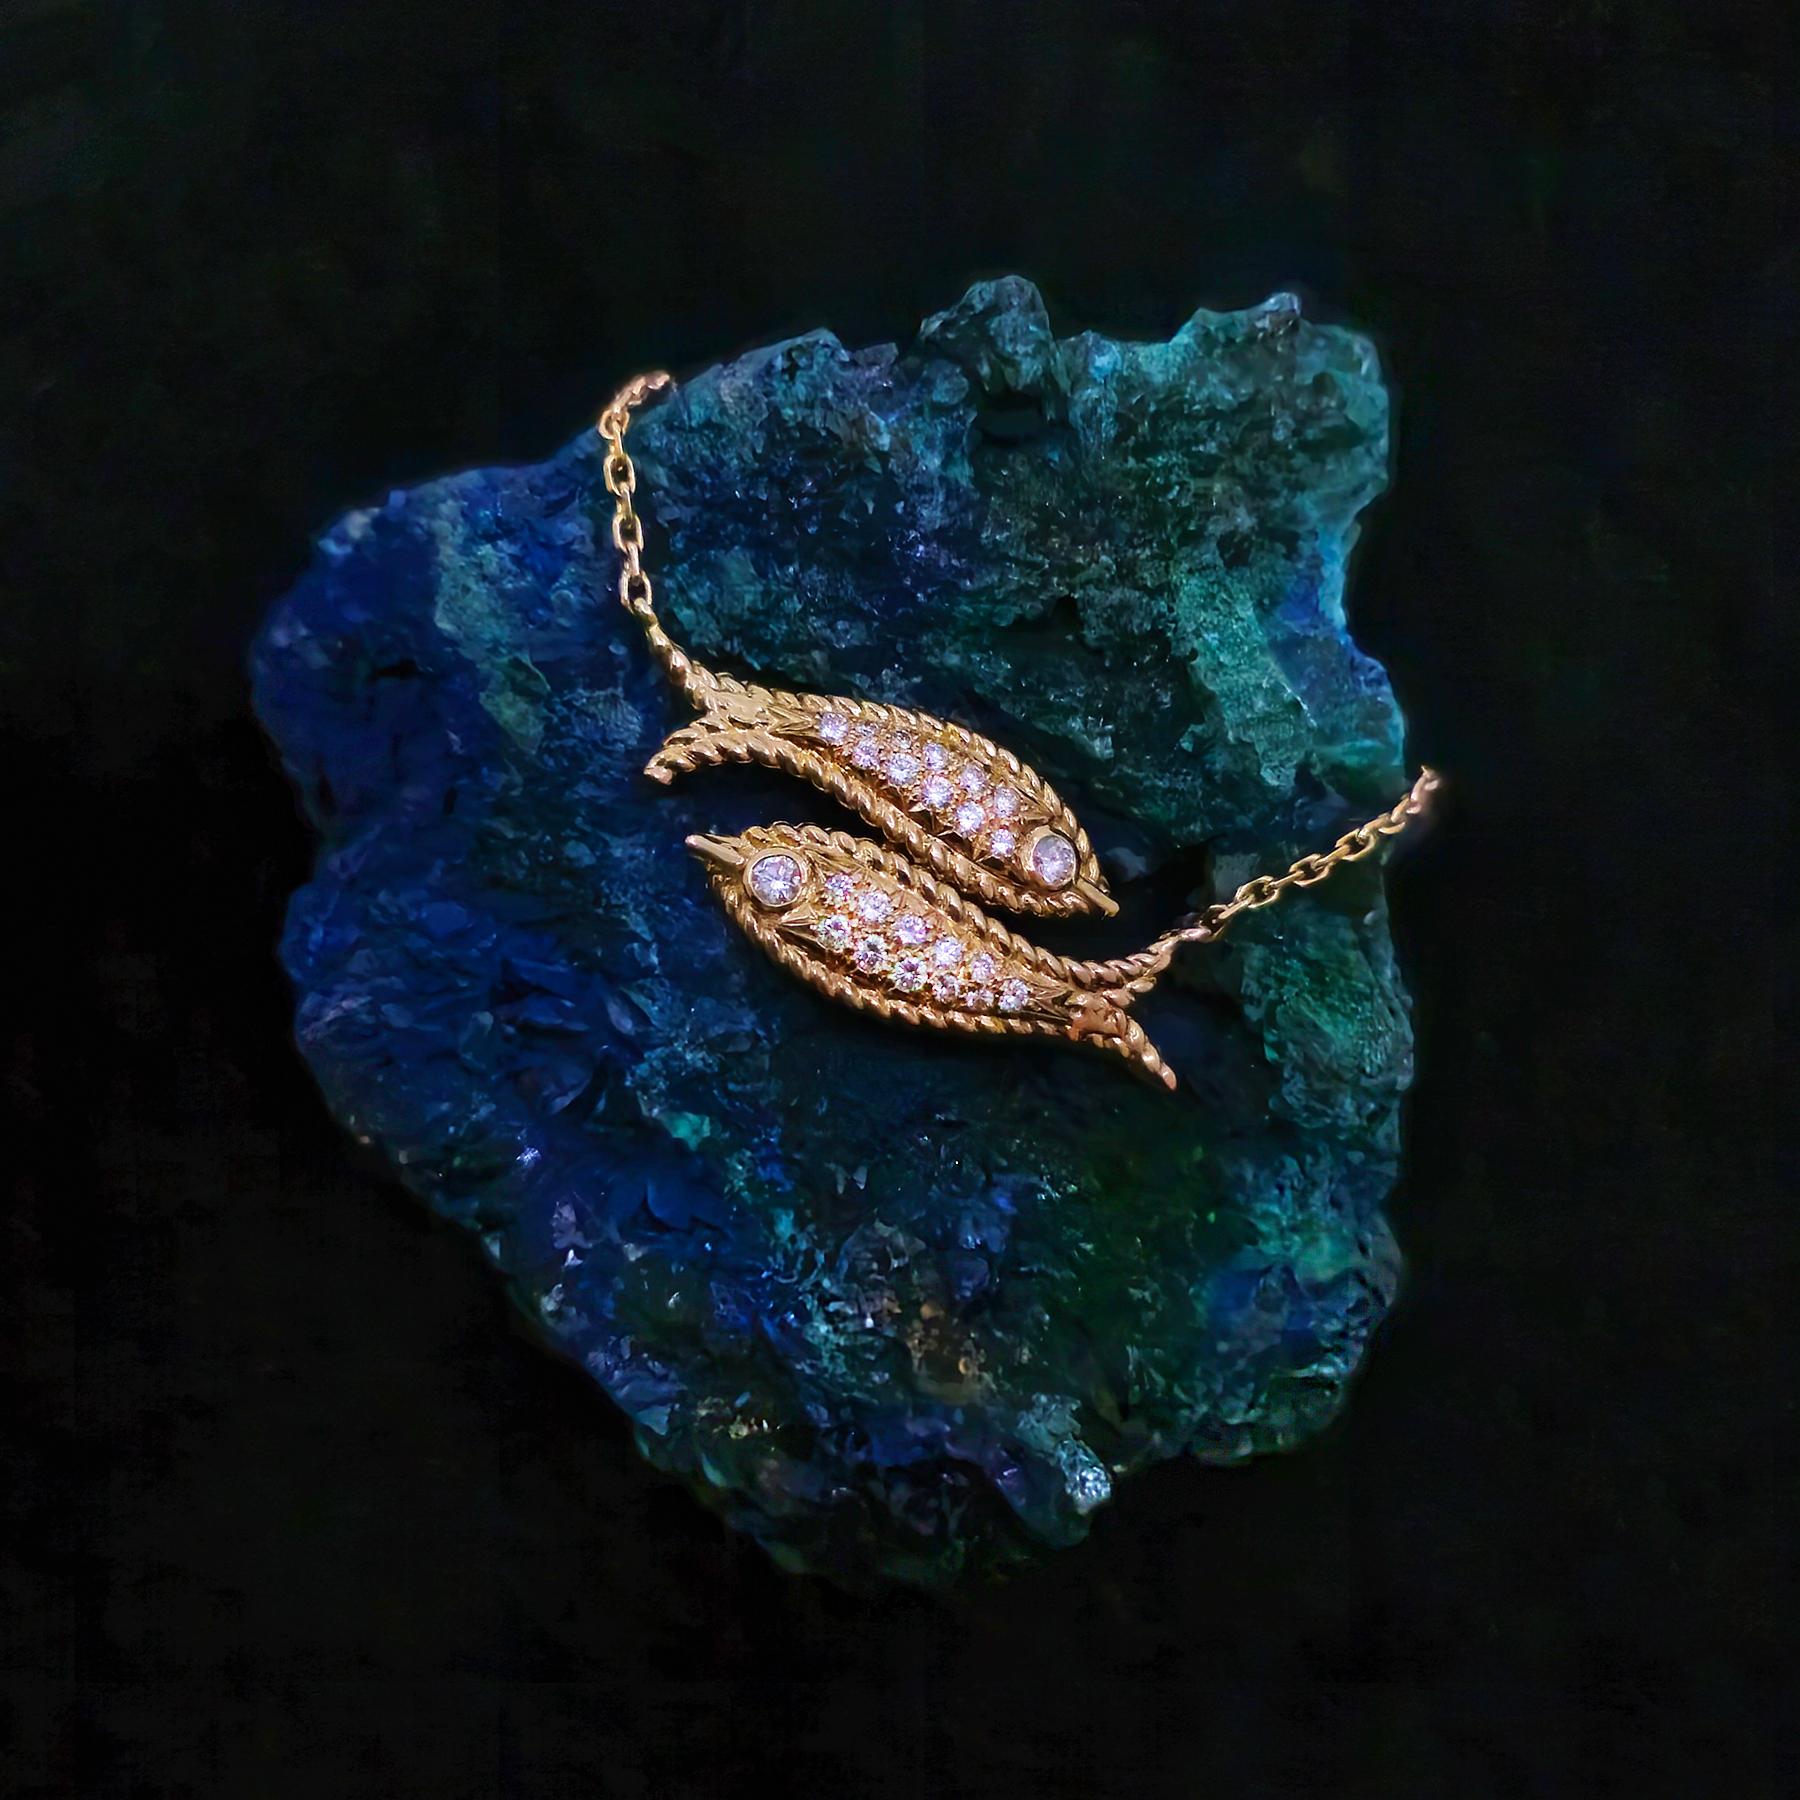 Collier court en diamant et or jaune 18 carats, zodiac (Poissons), par Fred, Paris. 

Ce pendentif sophistiqué de style Zodiac représente deux poissons nageant dans des directions opposées. Un magnifique collier pendentif, à porter tout le temps, et